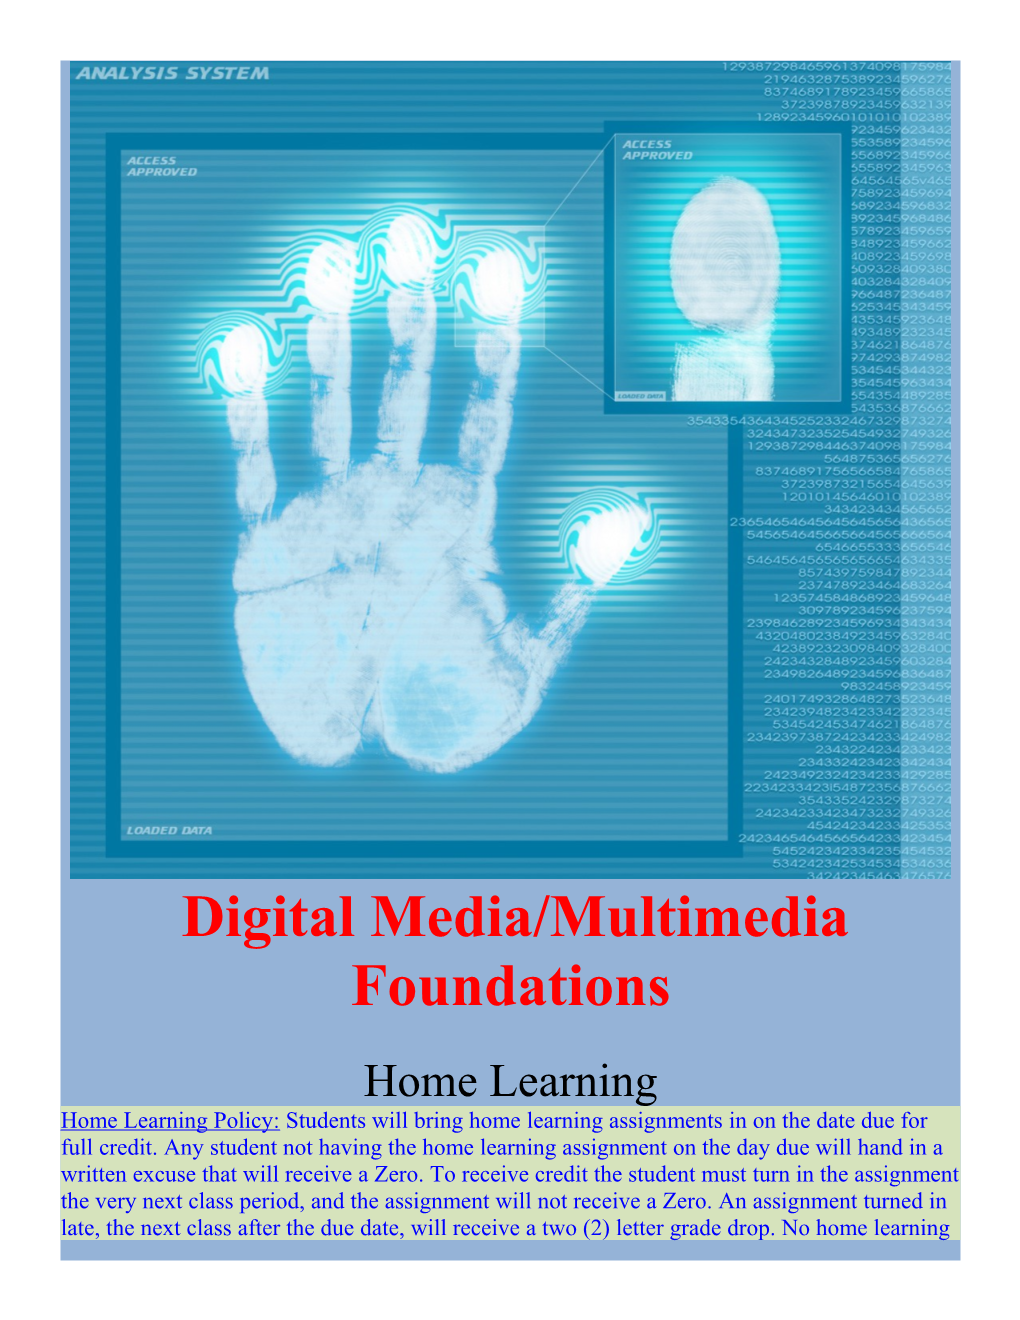 Digital Media/Multimedia Foundations